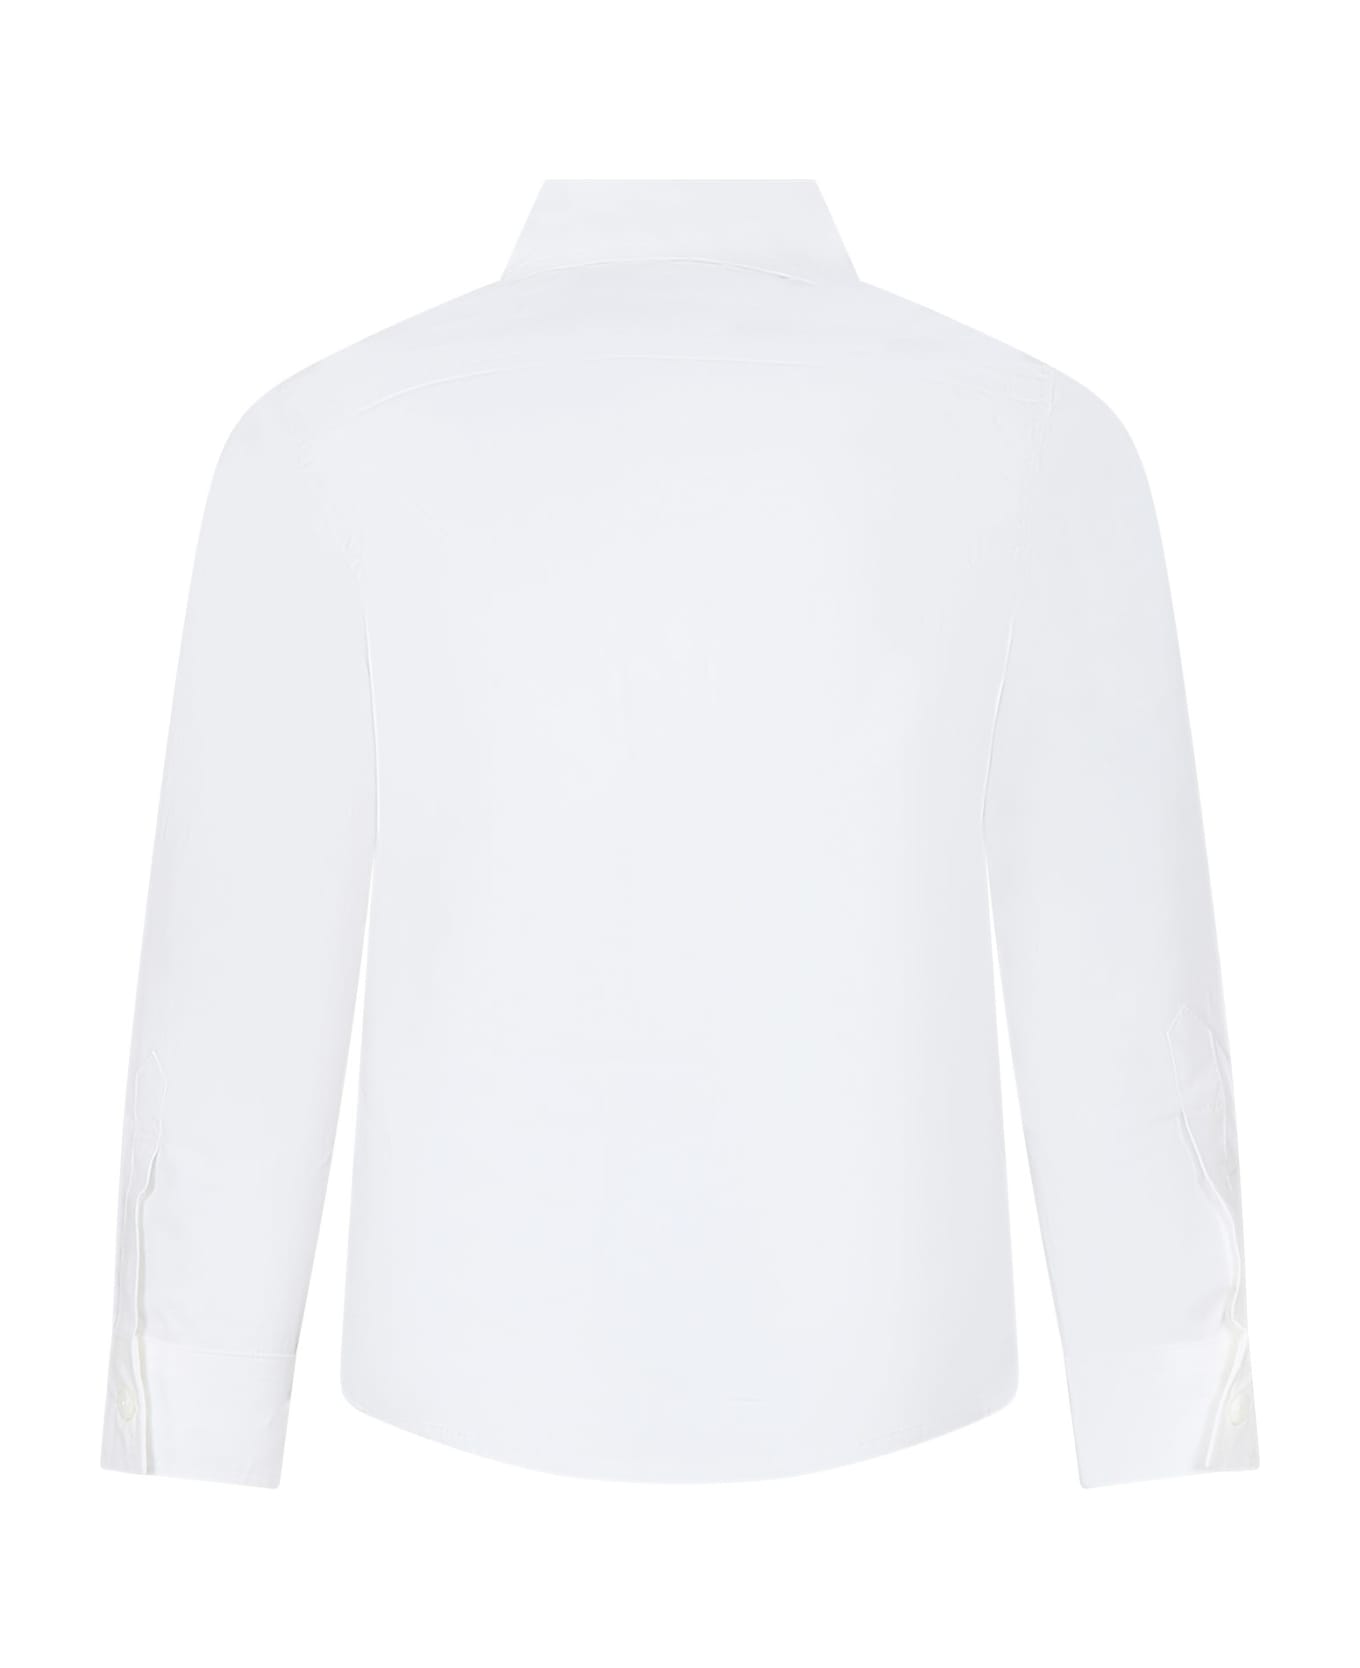 Dsquared2 White Shirt For Boy - White シャツ